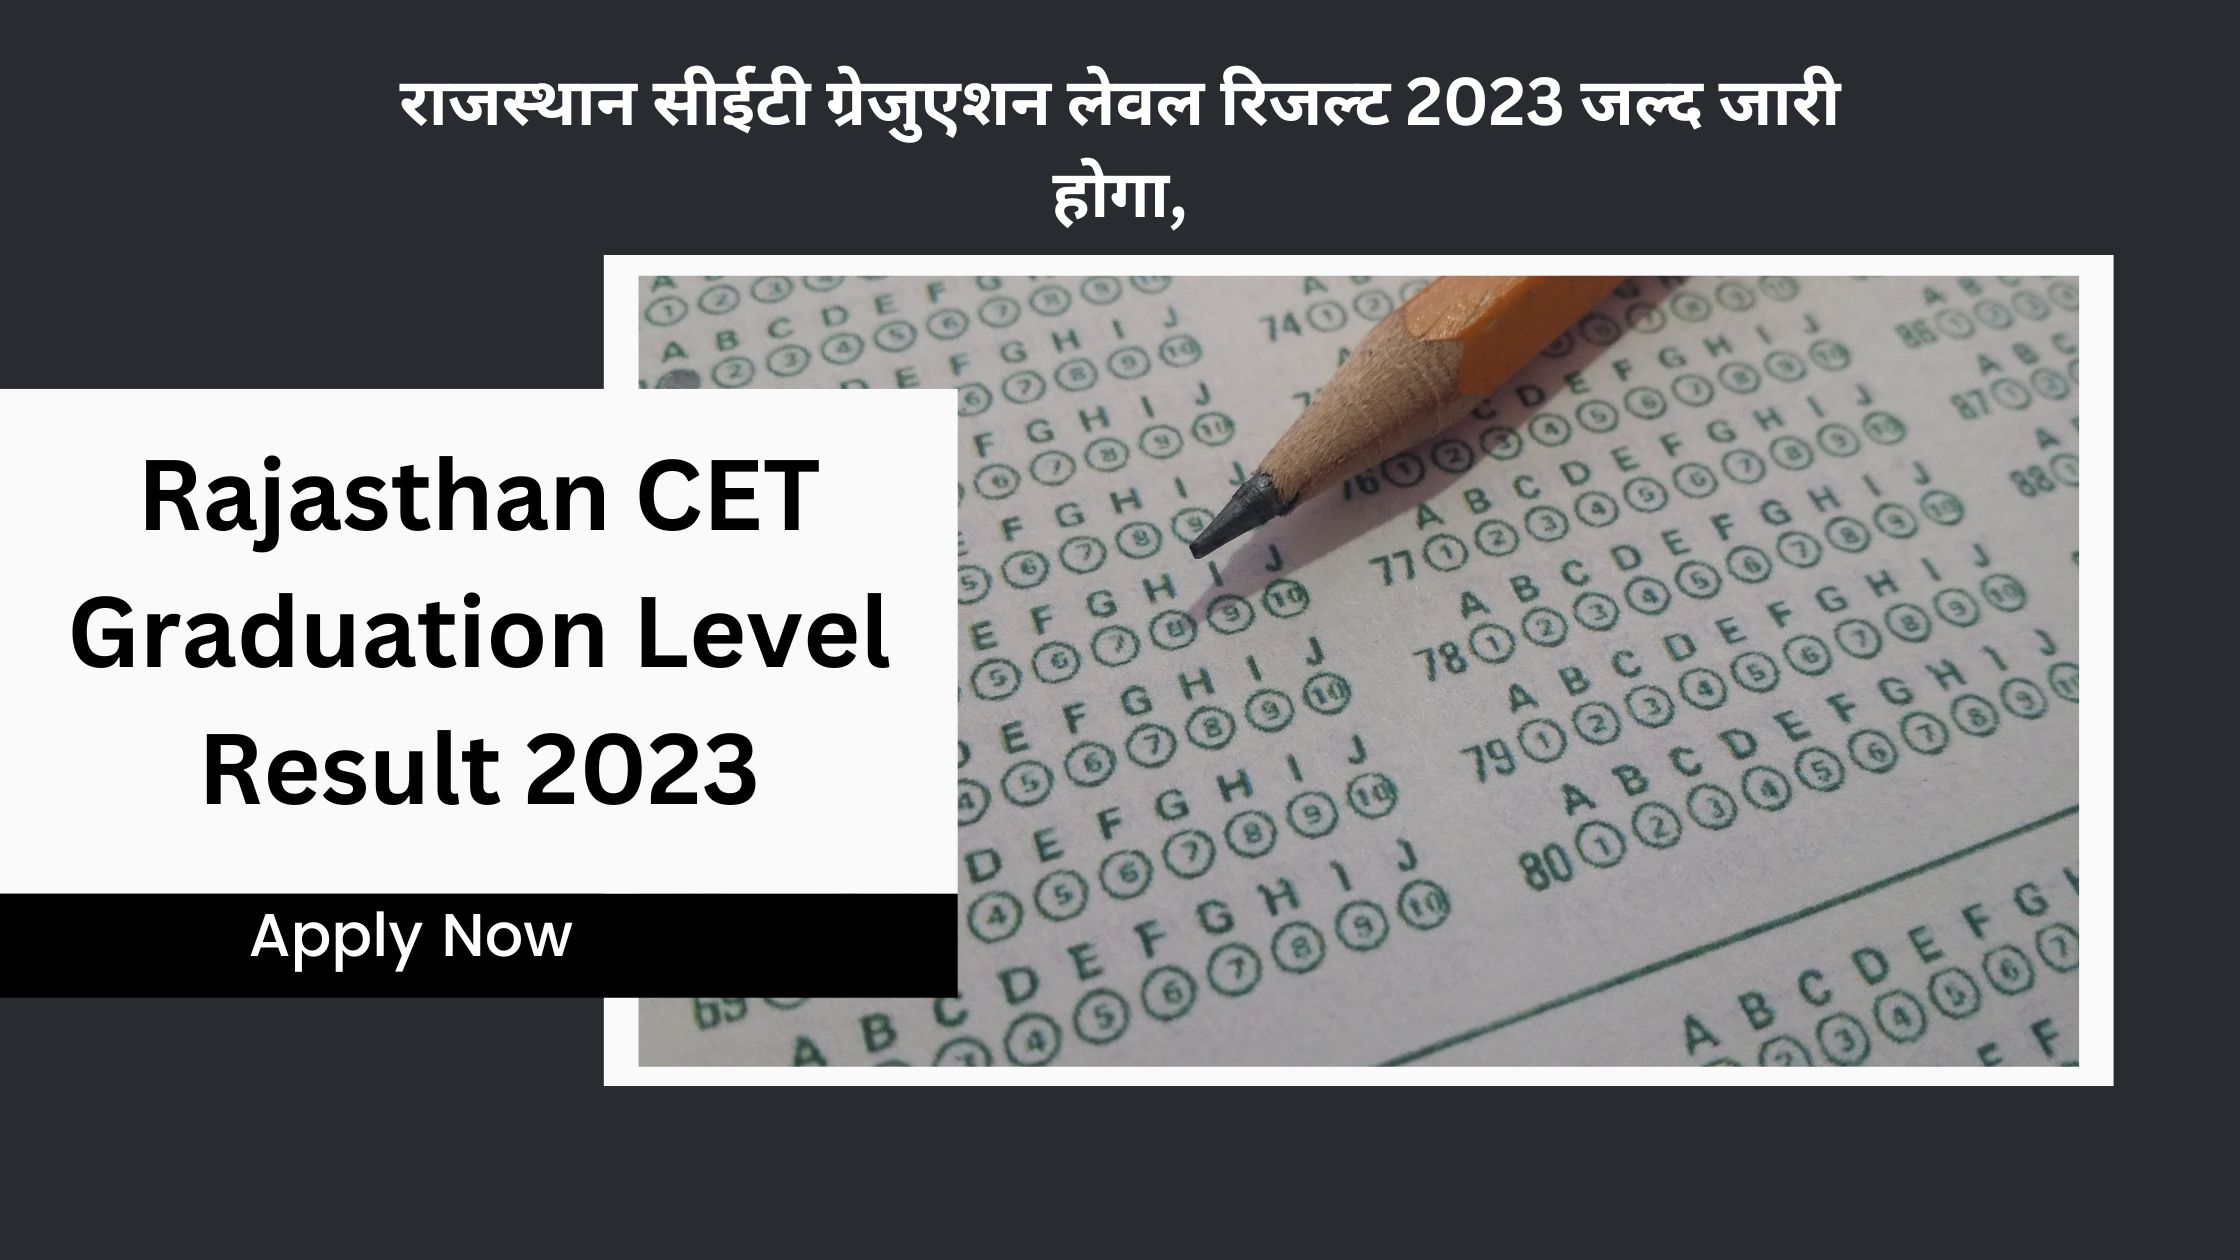 Rajasthan CET Graduation Level Result 2023